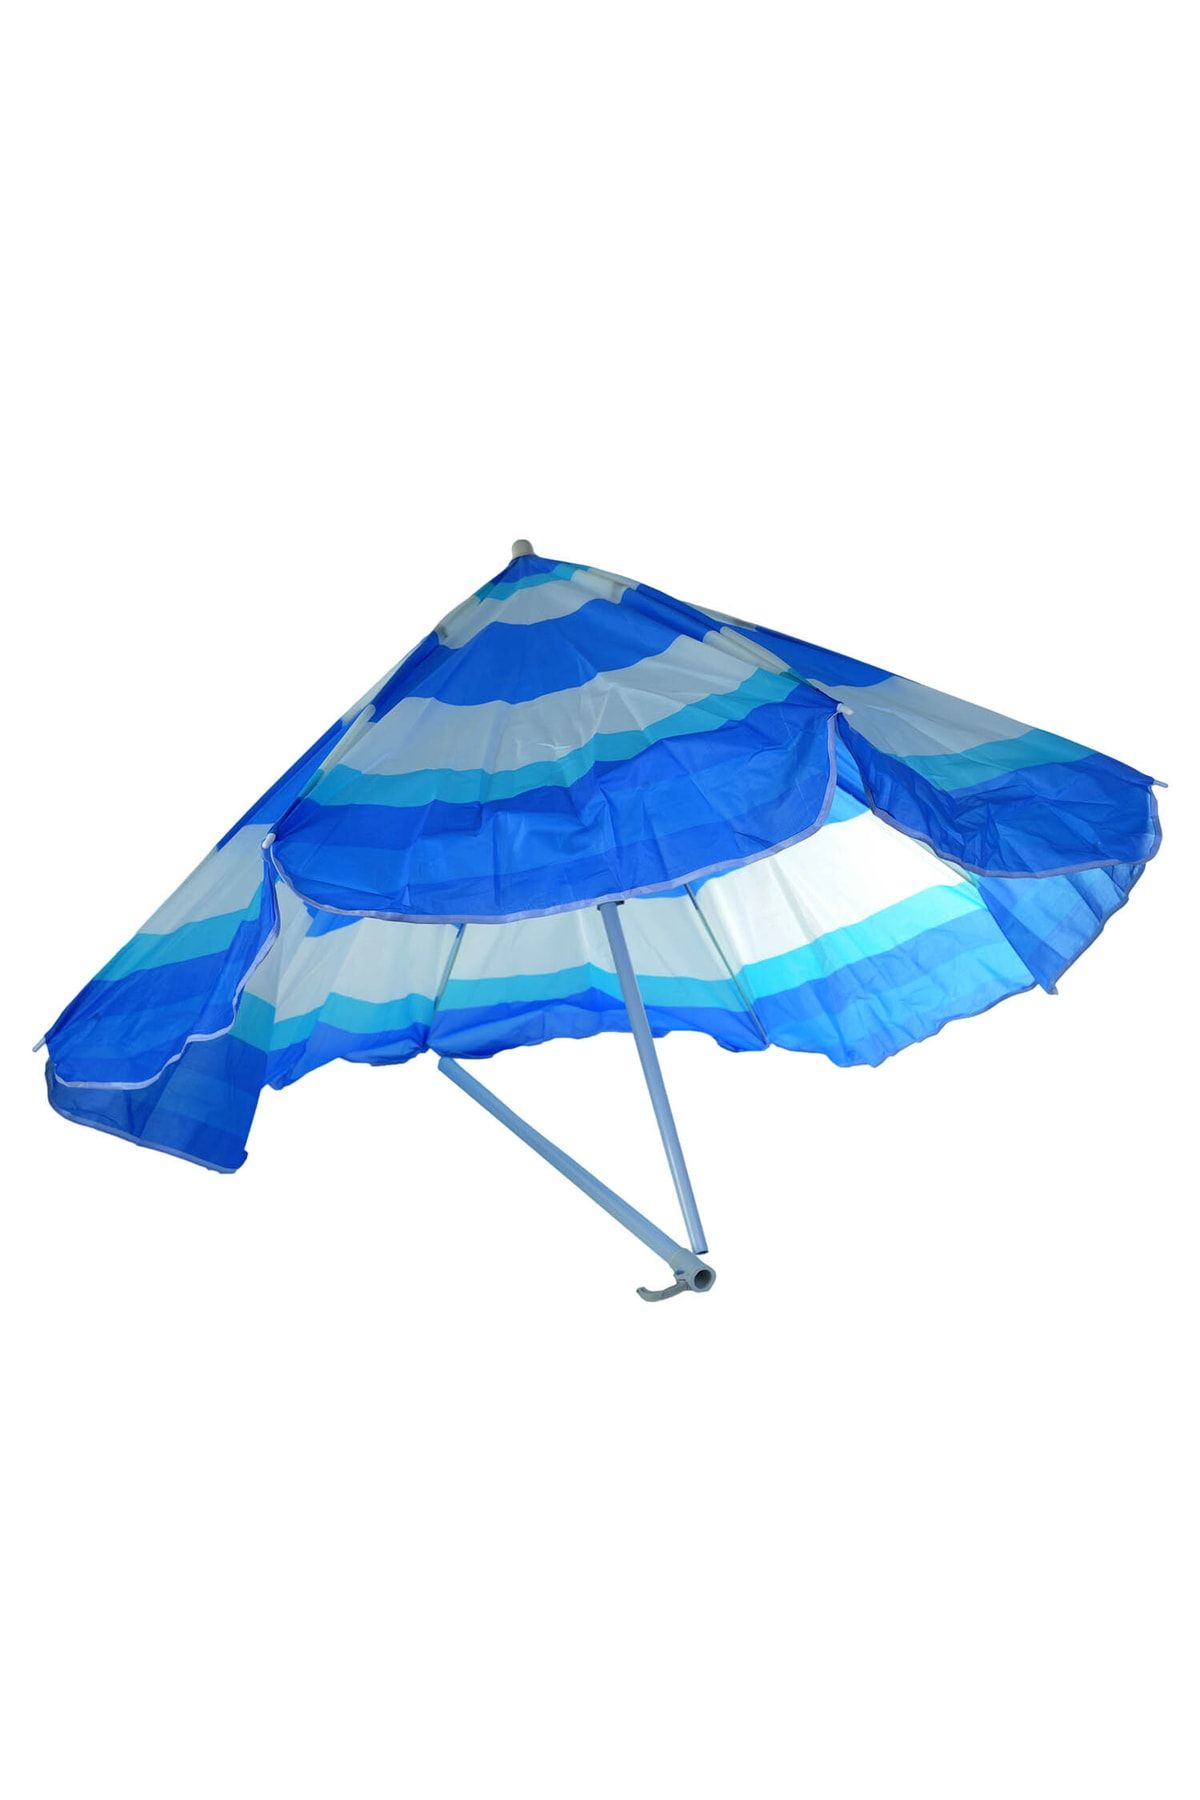 Genel Markalar Plaj Şemsiyesi 160 Cm